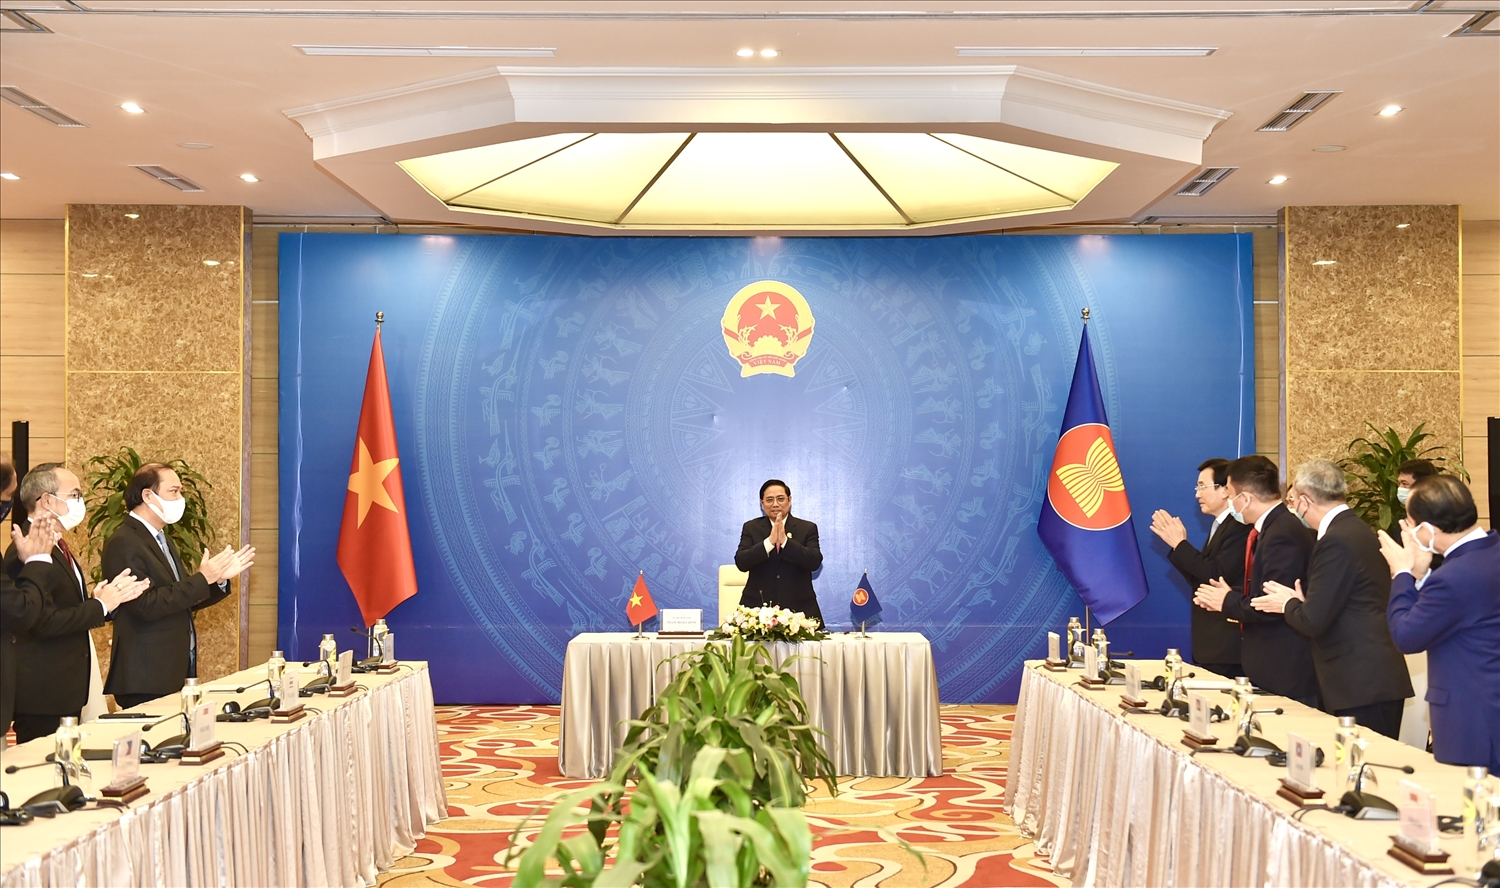 Thủ tướng Phạm Minh Chính bày tỏ cảm ơn các Đại sứ, Đại biện đã cảm thông và chia sẻ cùng Việt Nam trải qua giai đoạn khó khăn do dịch bệnh. Ảnh: VGP/Nhật Bắc